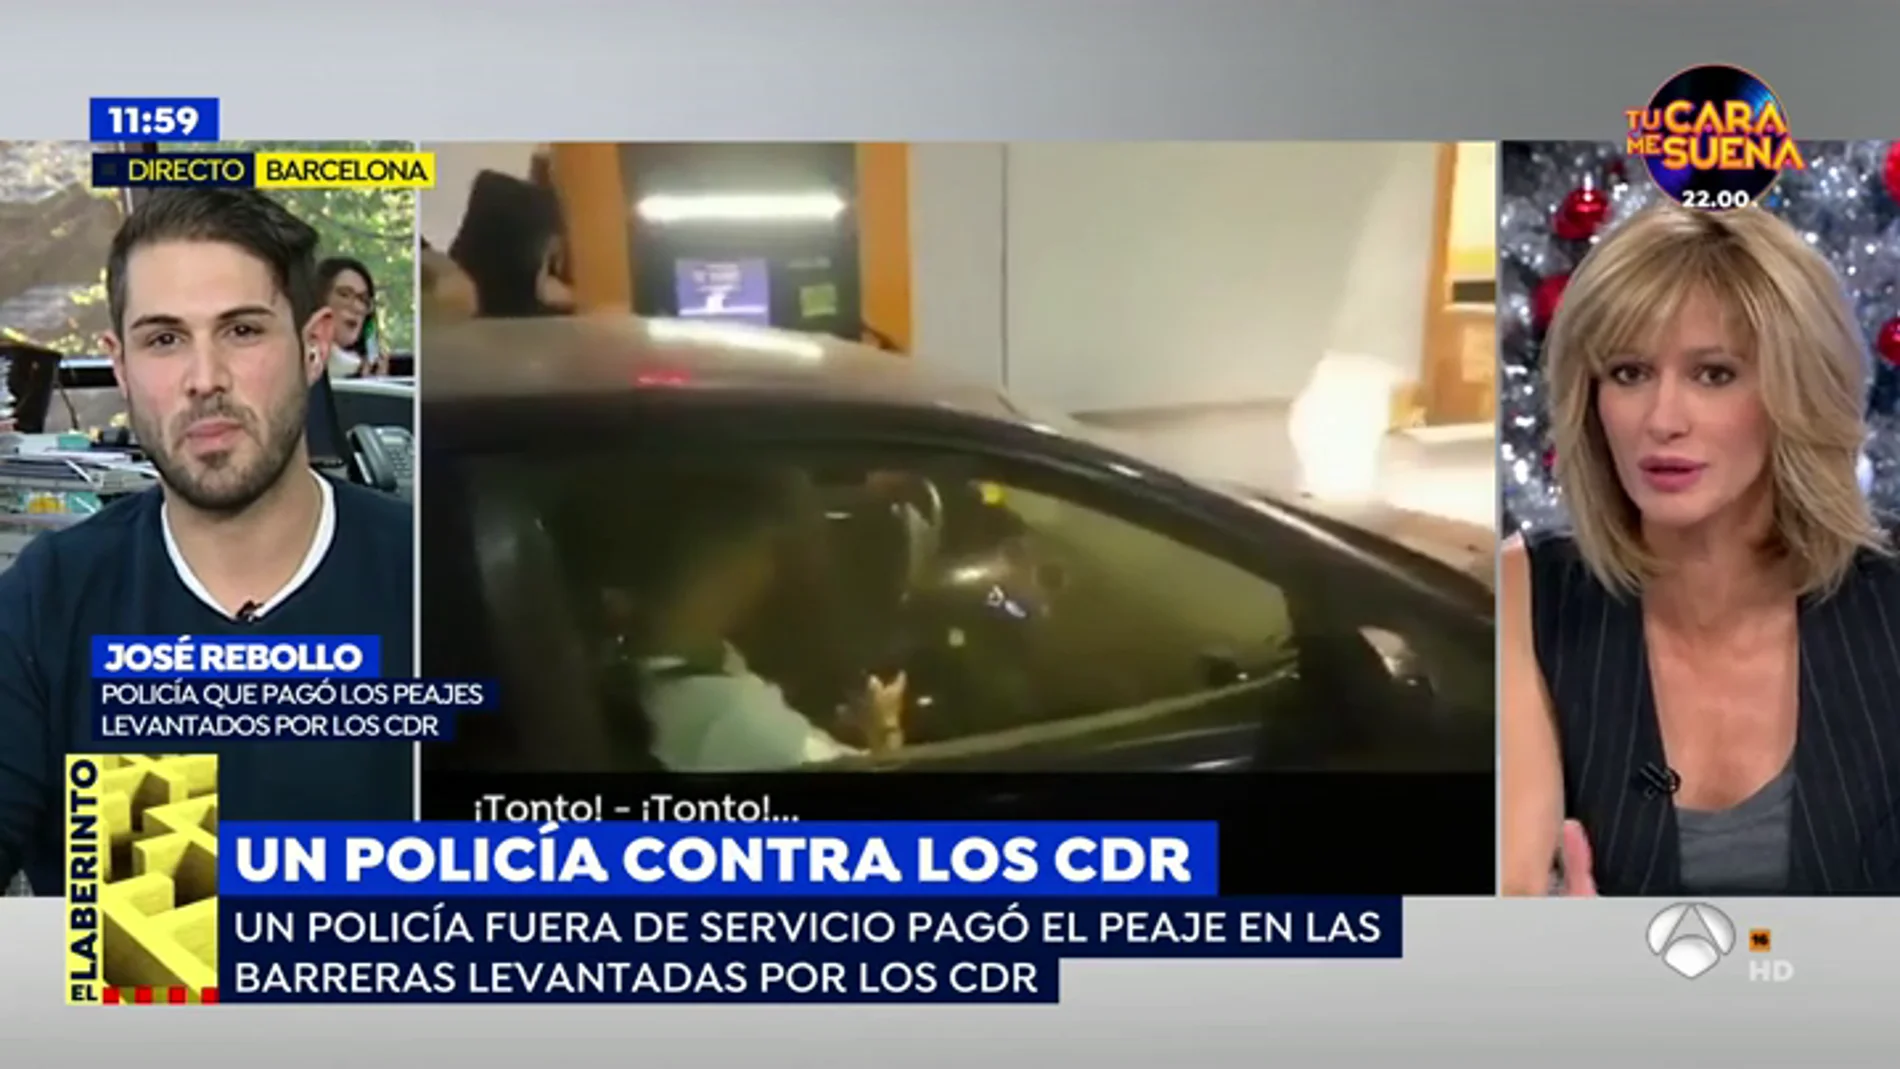 Los CDR insultan a un polícia nacional por pagar un peaje: "Los policías nacionales y los guardias civiles en Cataluña tenemos un trato diferencial"